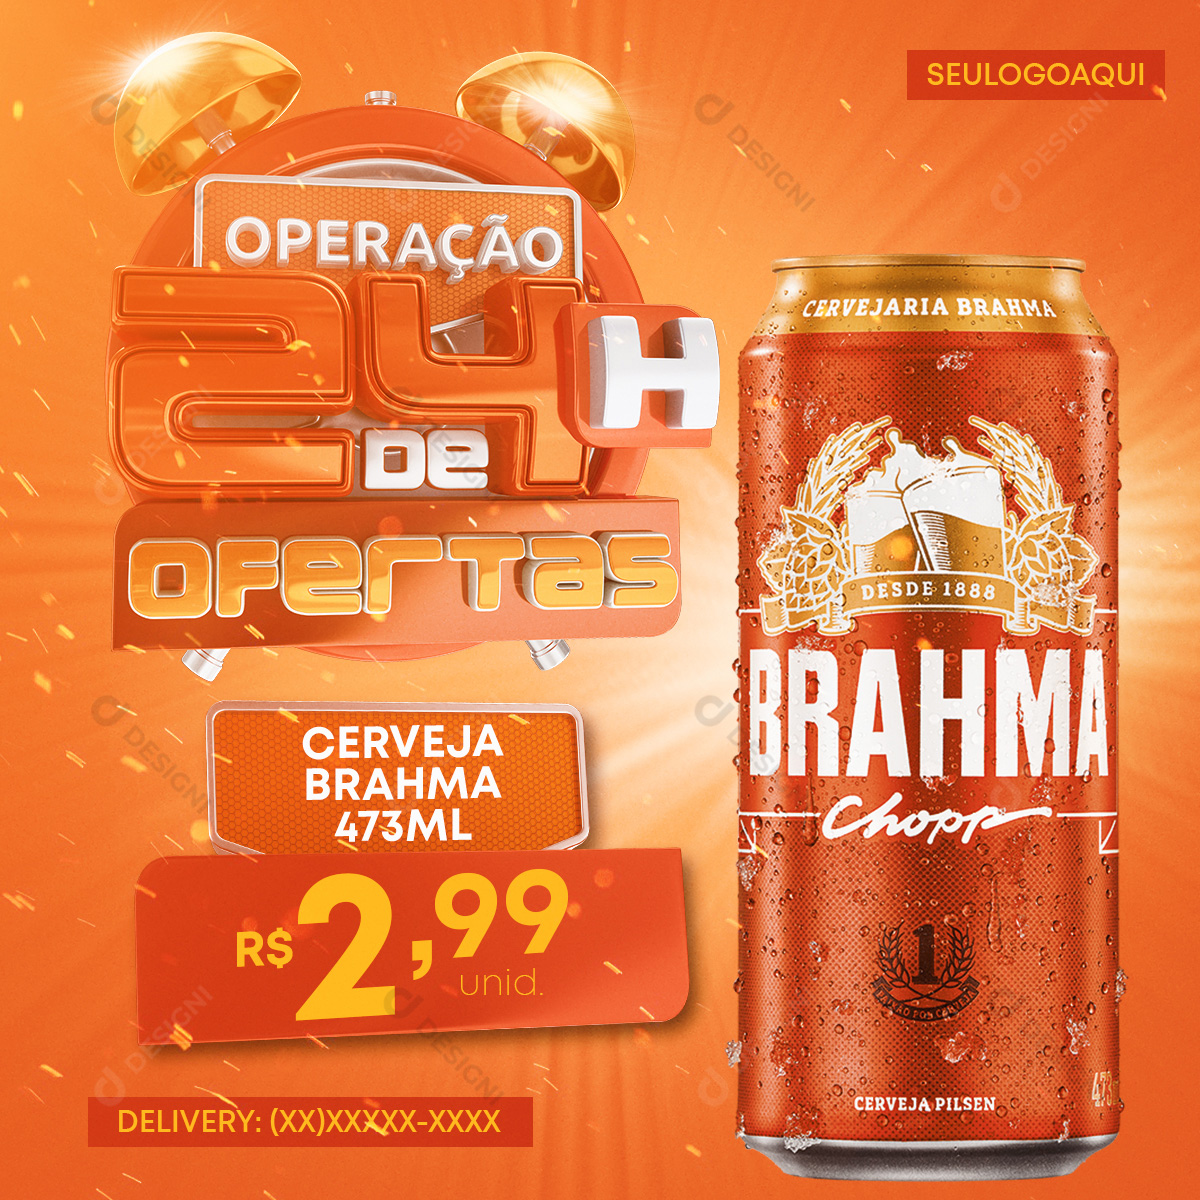 Oferta de 24 Horas Cerveja Brahma Chopp 473ml Social Media PSD Editável